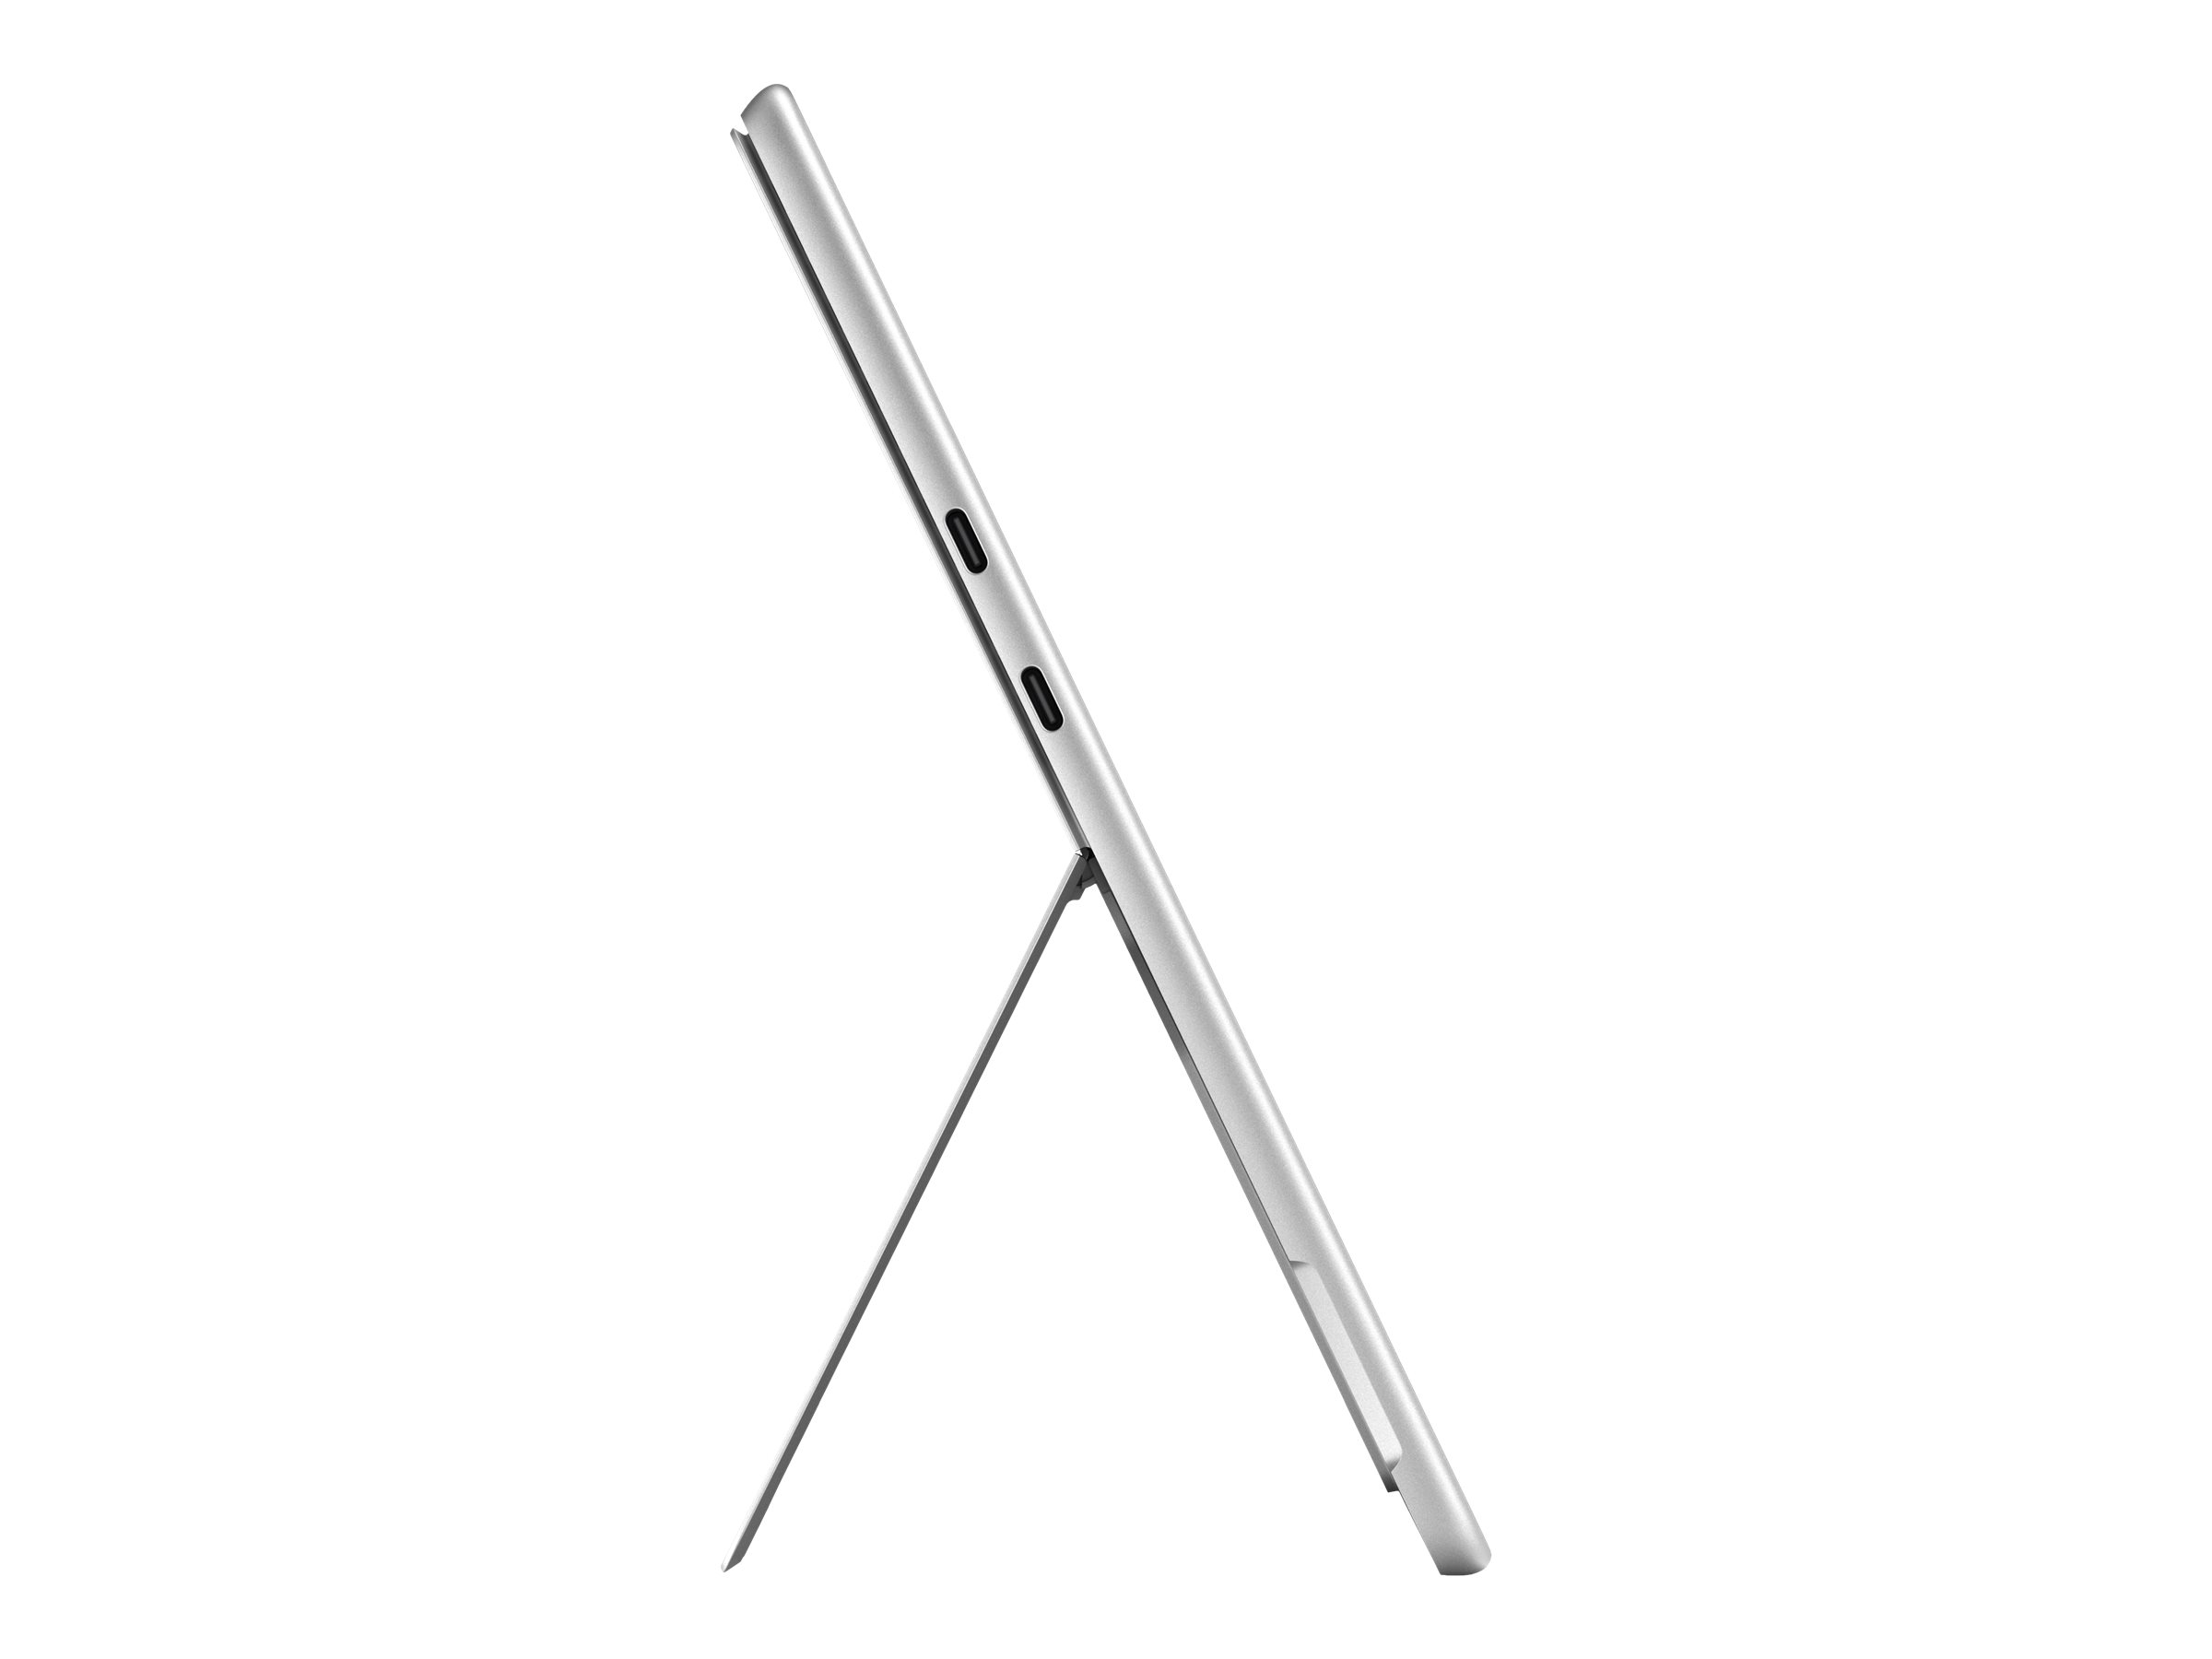 Microsoft Surface Pro 9 - Tablette - Intel Core i7 - 1255U / jusqu'à 4.7 GHz - Evo - Win 11 Home - Carte graphique Intel Iris Xe - 16 Go RAM - 512 Go SSD - 13" écran tactile 2880 x 1920 @ 120 Hz - Wi-Fi 6E - platine - QIX-00004 - Ordinateurs portables